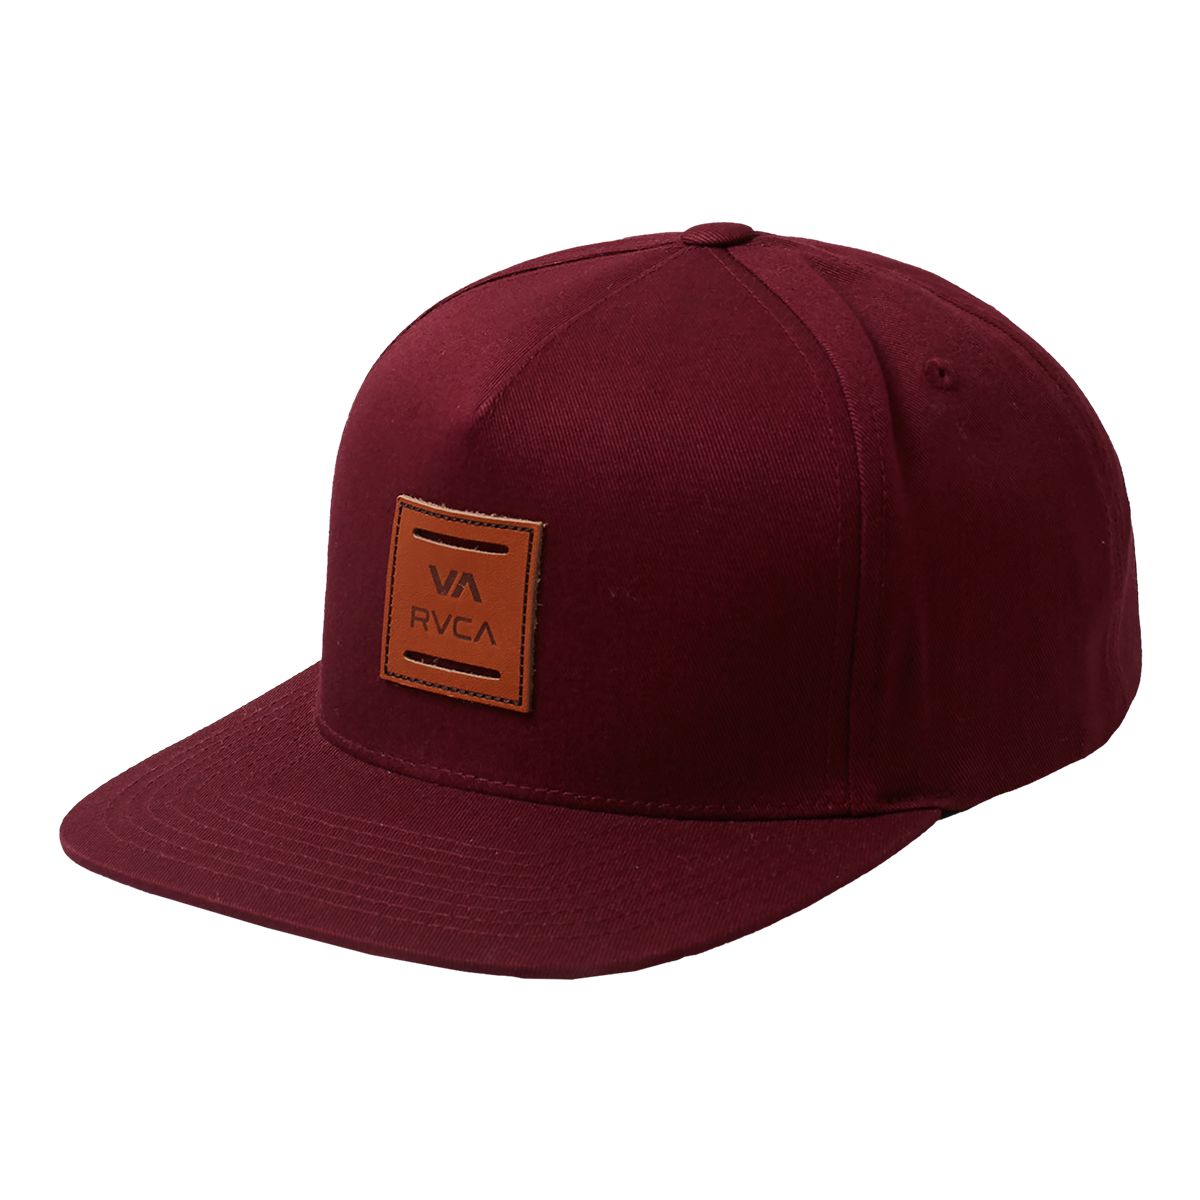 Rvca Men's VA All The Way Snapback Hat